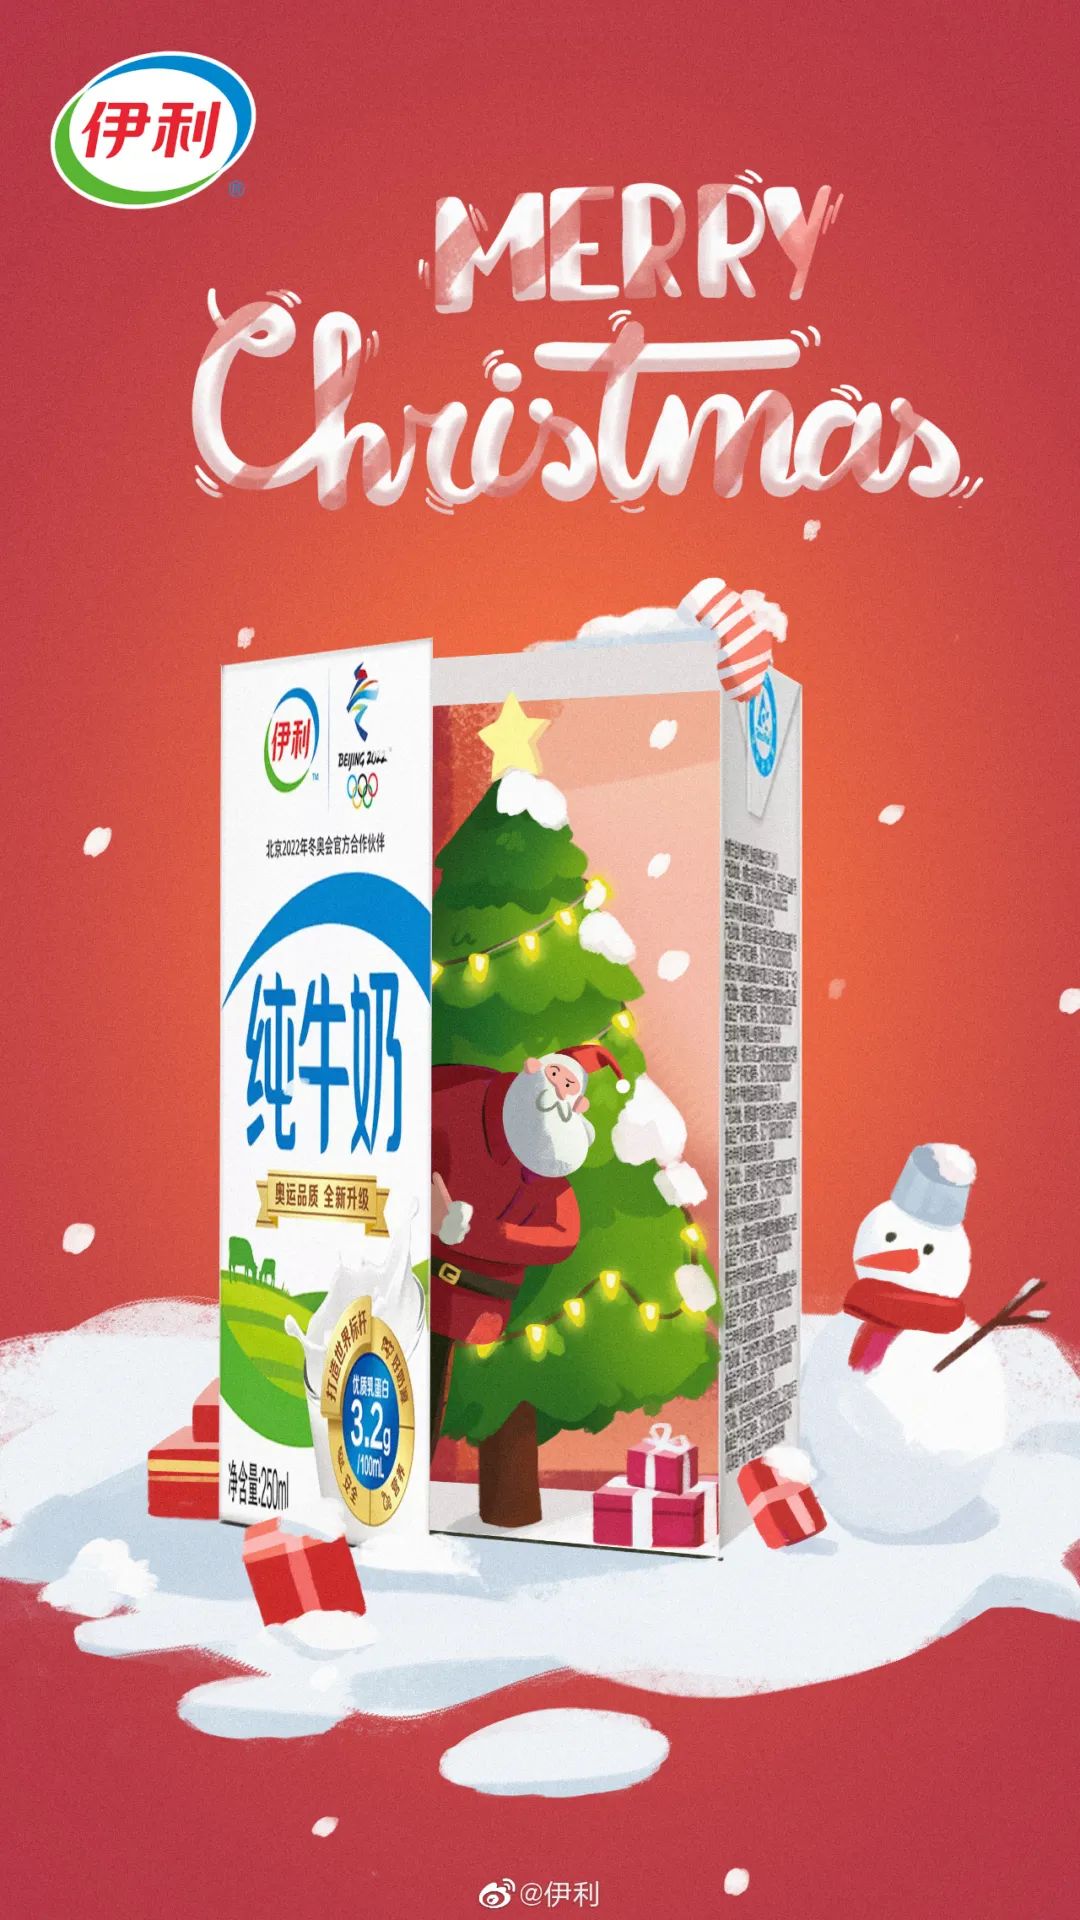 圣诞节创意攻略来了！30张品牌海报、50句文案、200套模板给你！